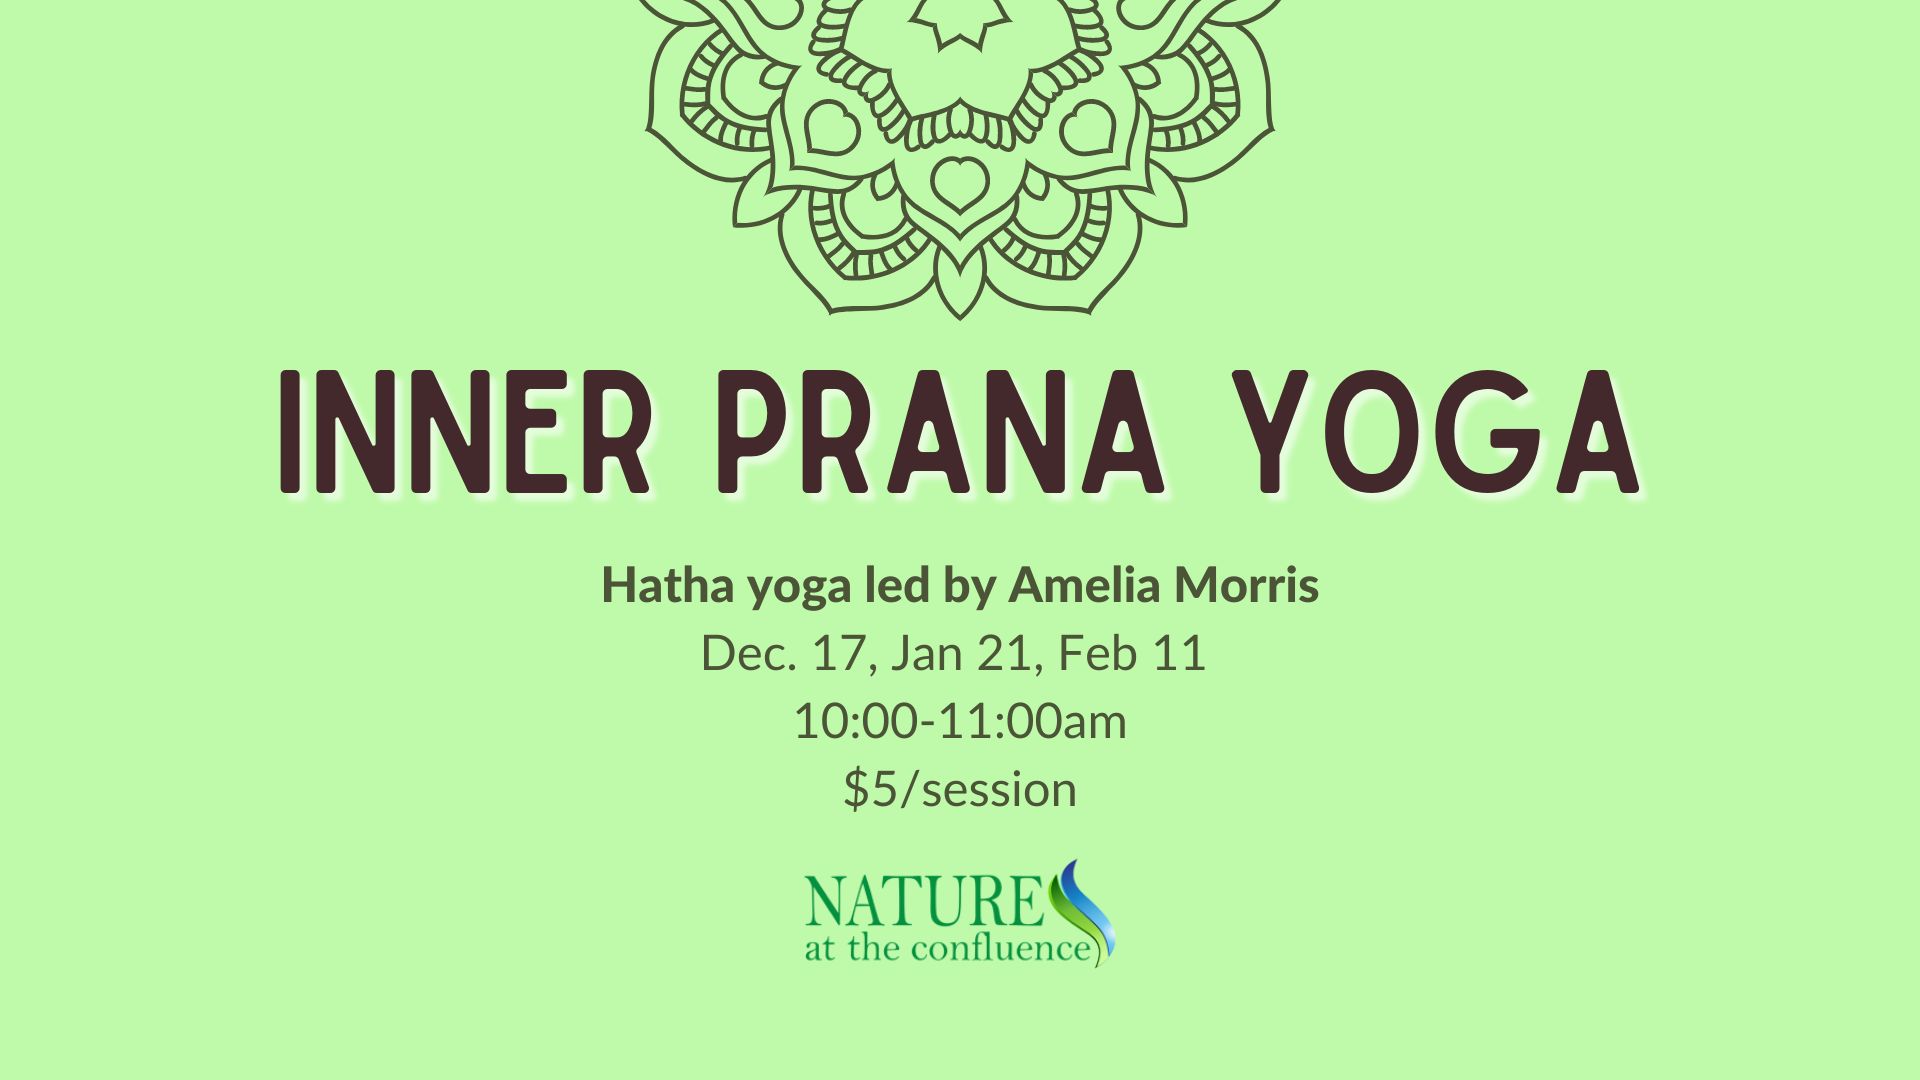 Prana-Yoga